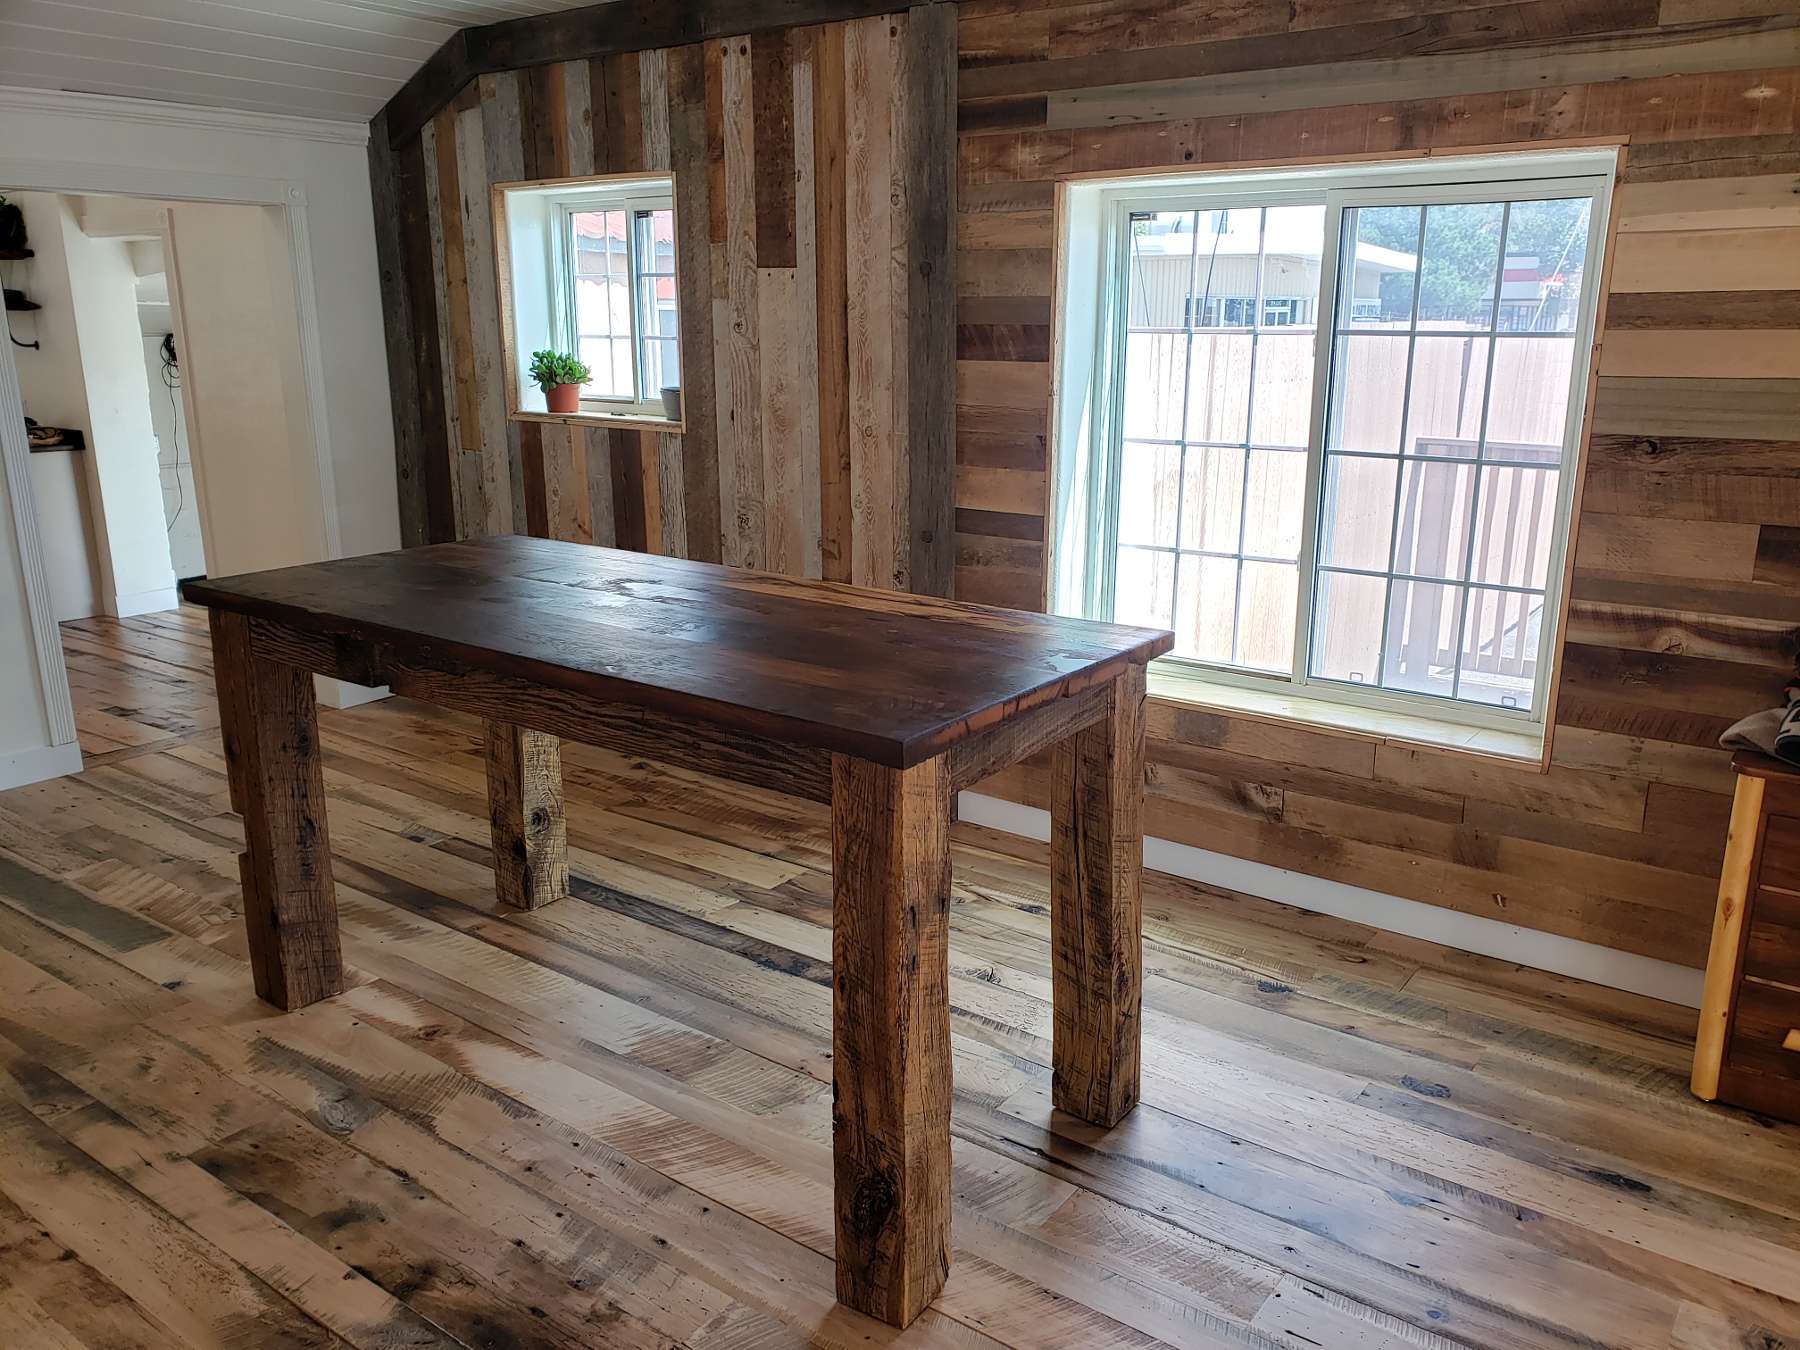 Interior designed QuarterSawn wood.